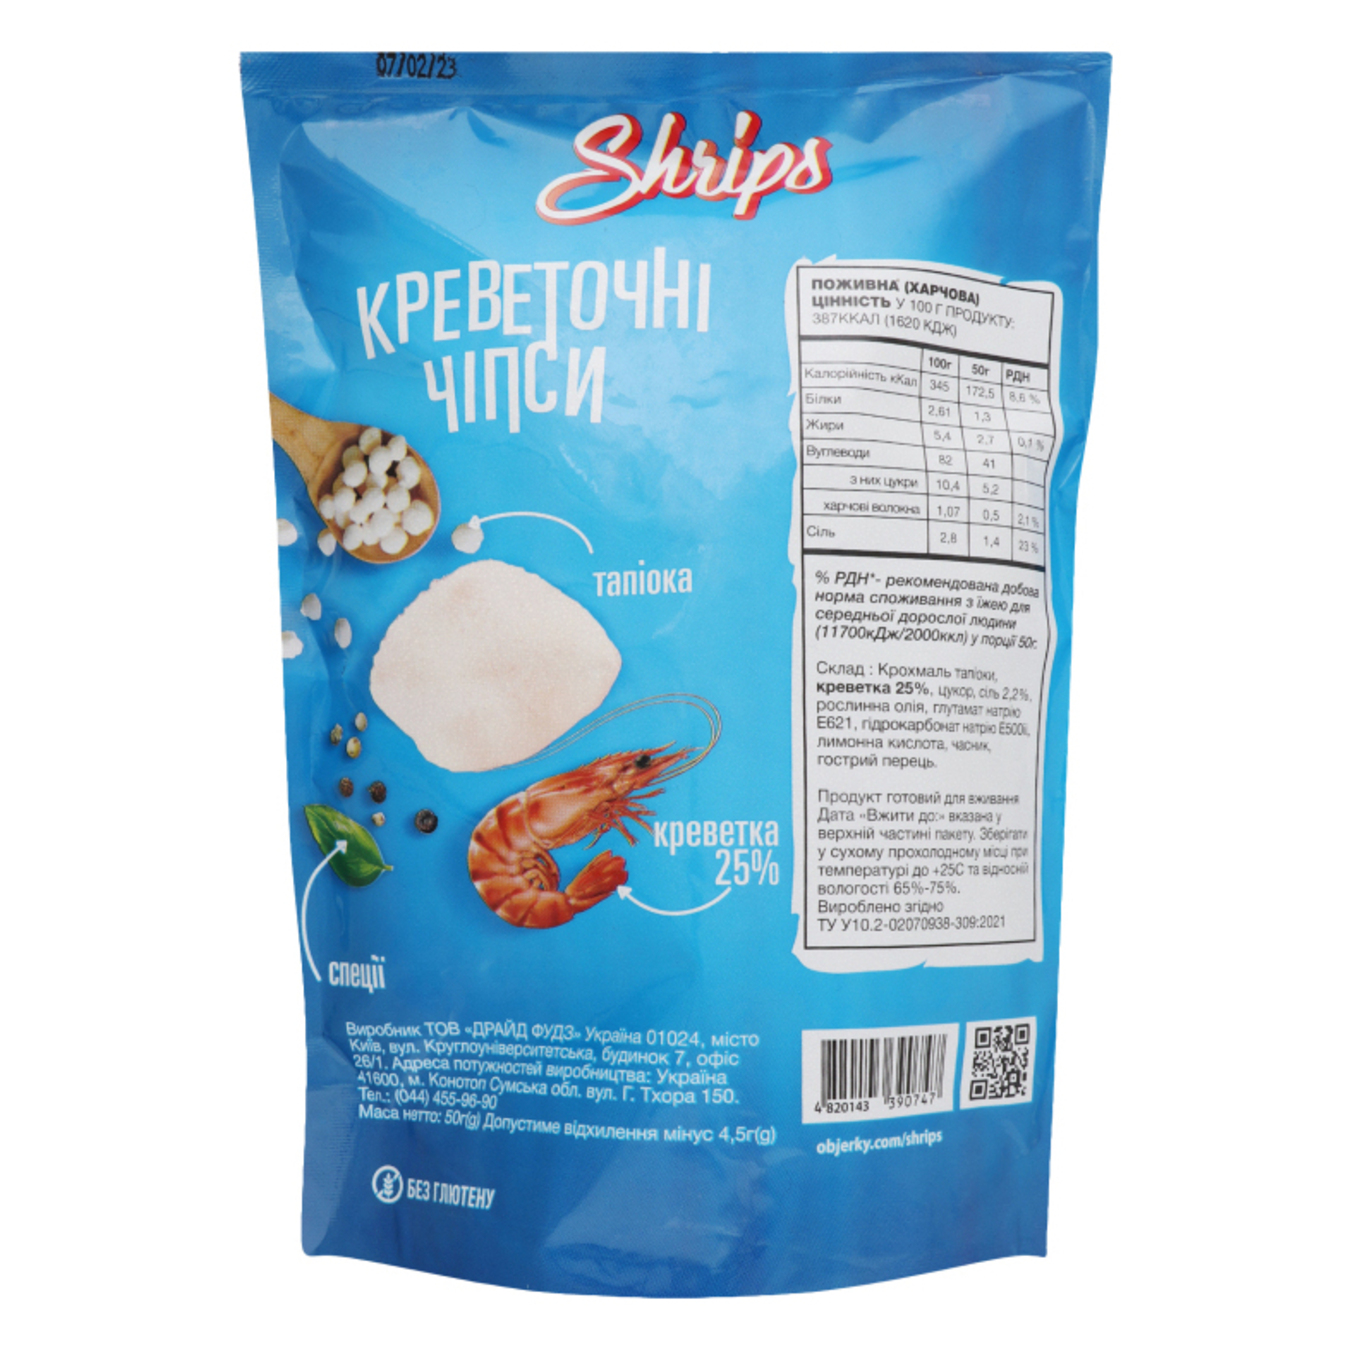 Original shrimp chips Shrips 50g 4